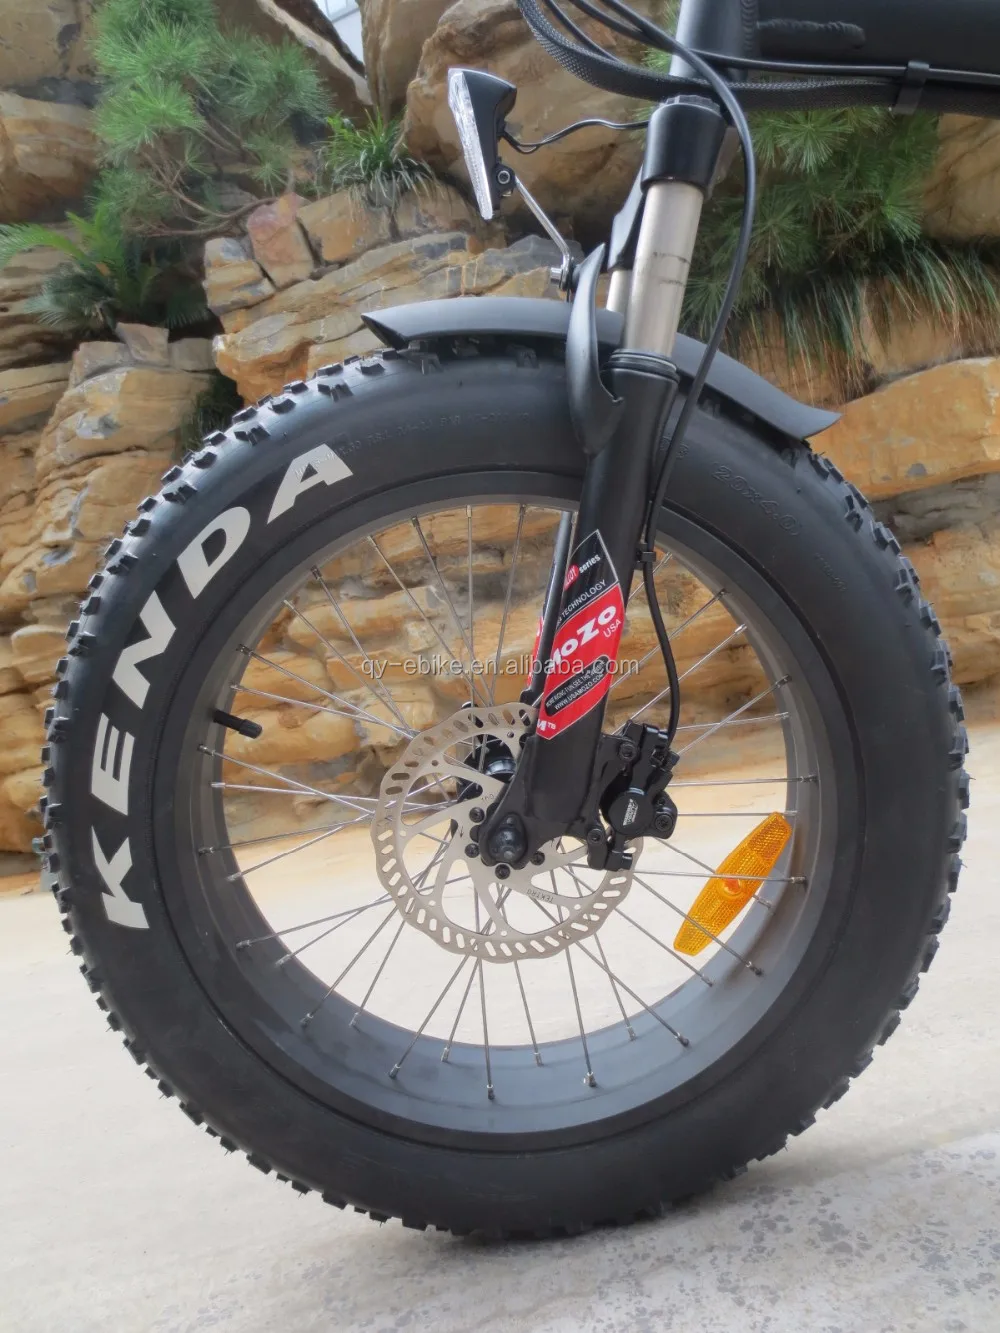 20x4 bike tire